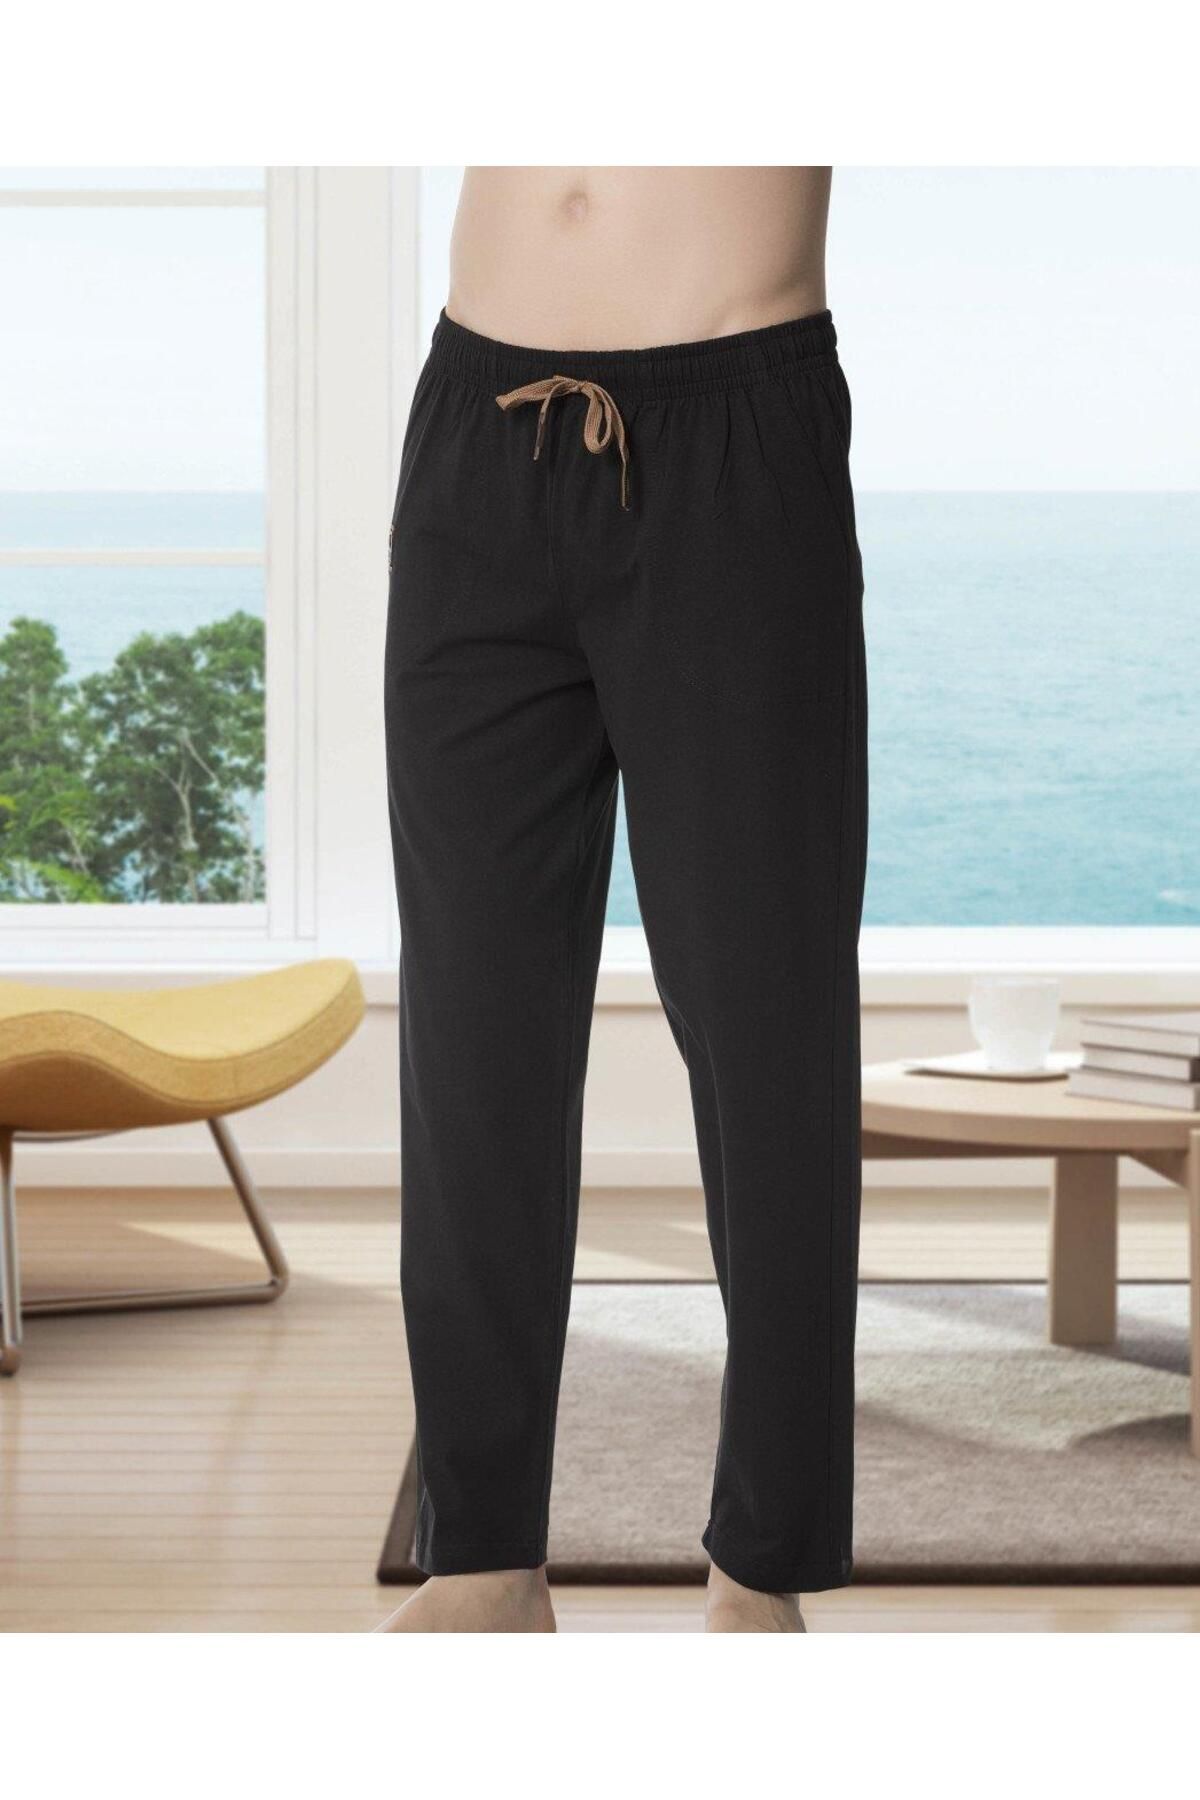 KLY 106 Battal Lyc Erkek Orta Kalın Tek Penye Pantolon